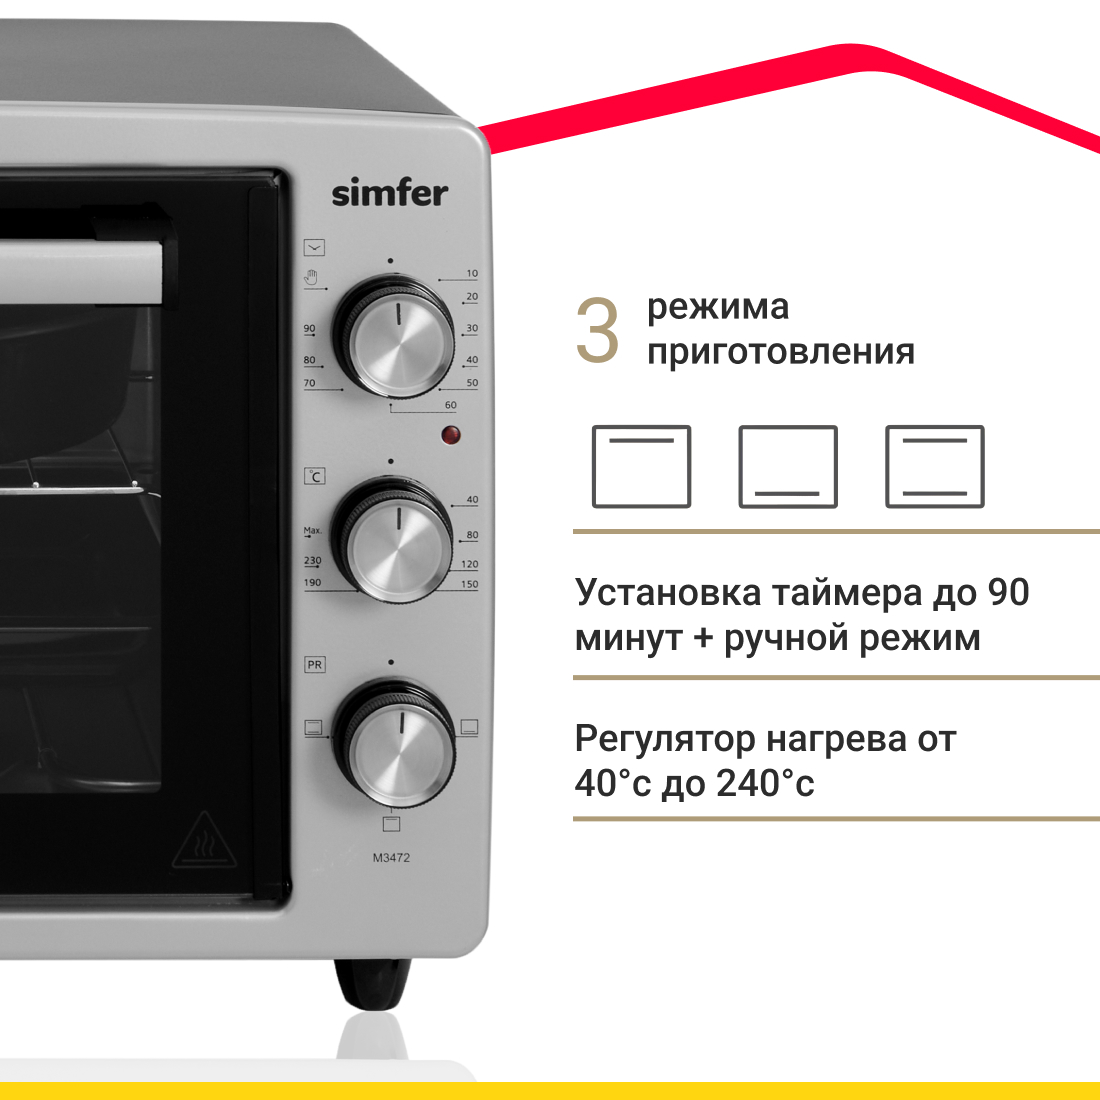 Мини-печь Simfer M3472 (3 режима, цвет серый) Мини-печь Simfer M3472 (3 режима, цвет серый) - фото 2